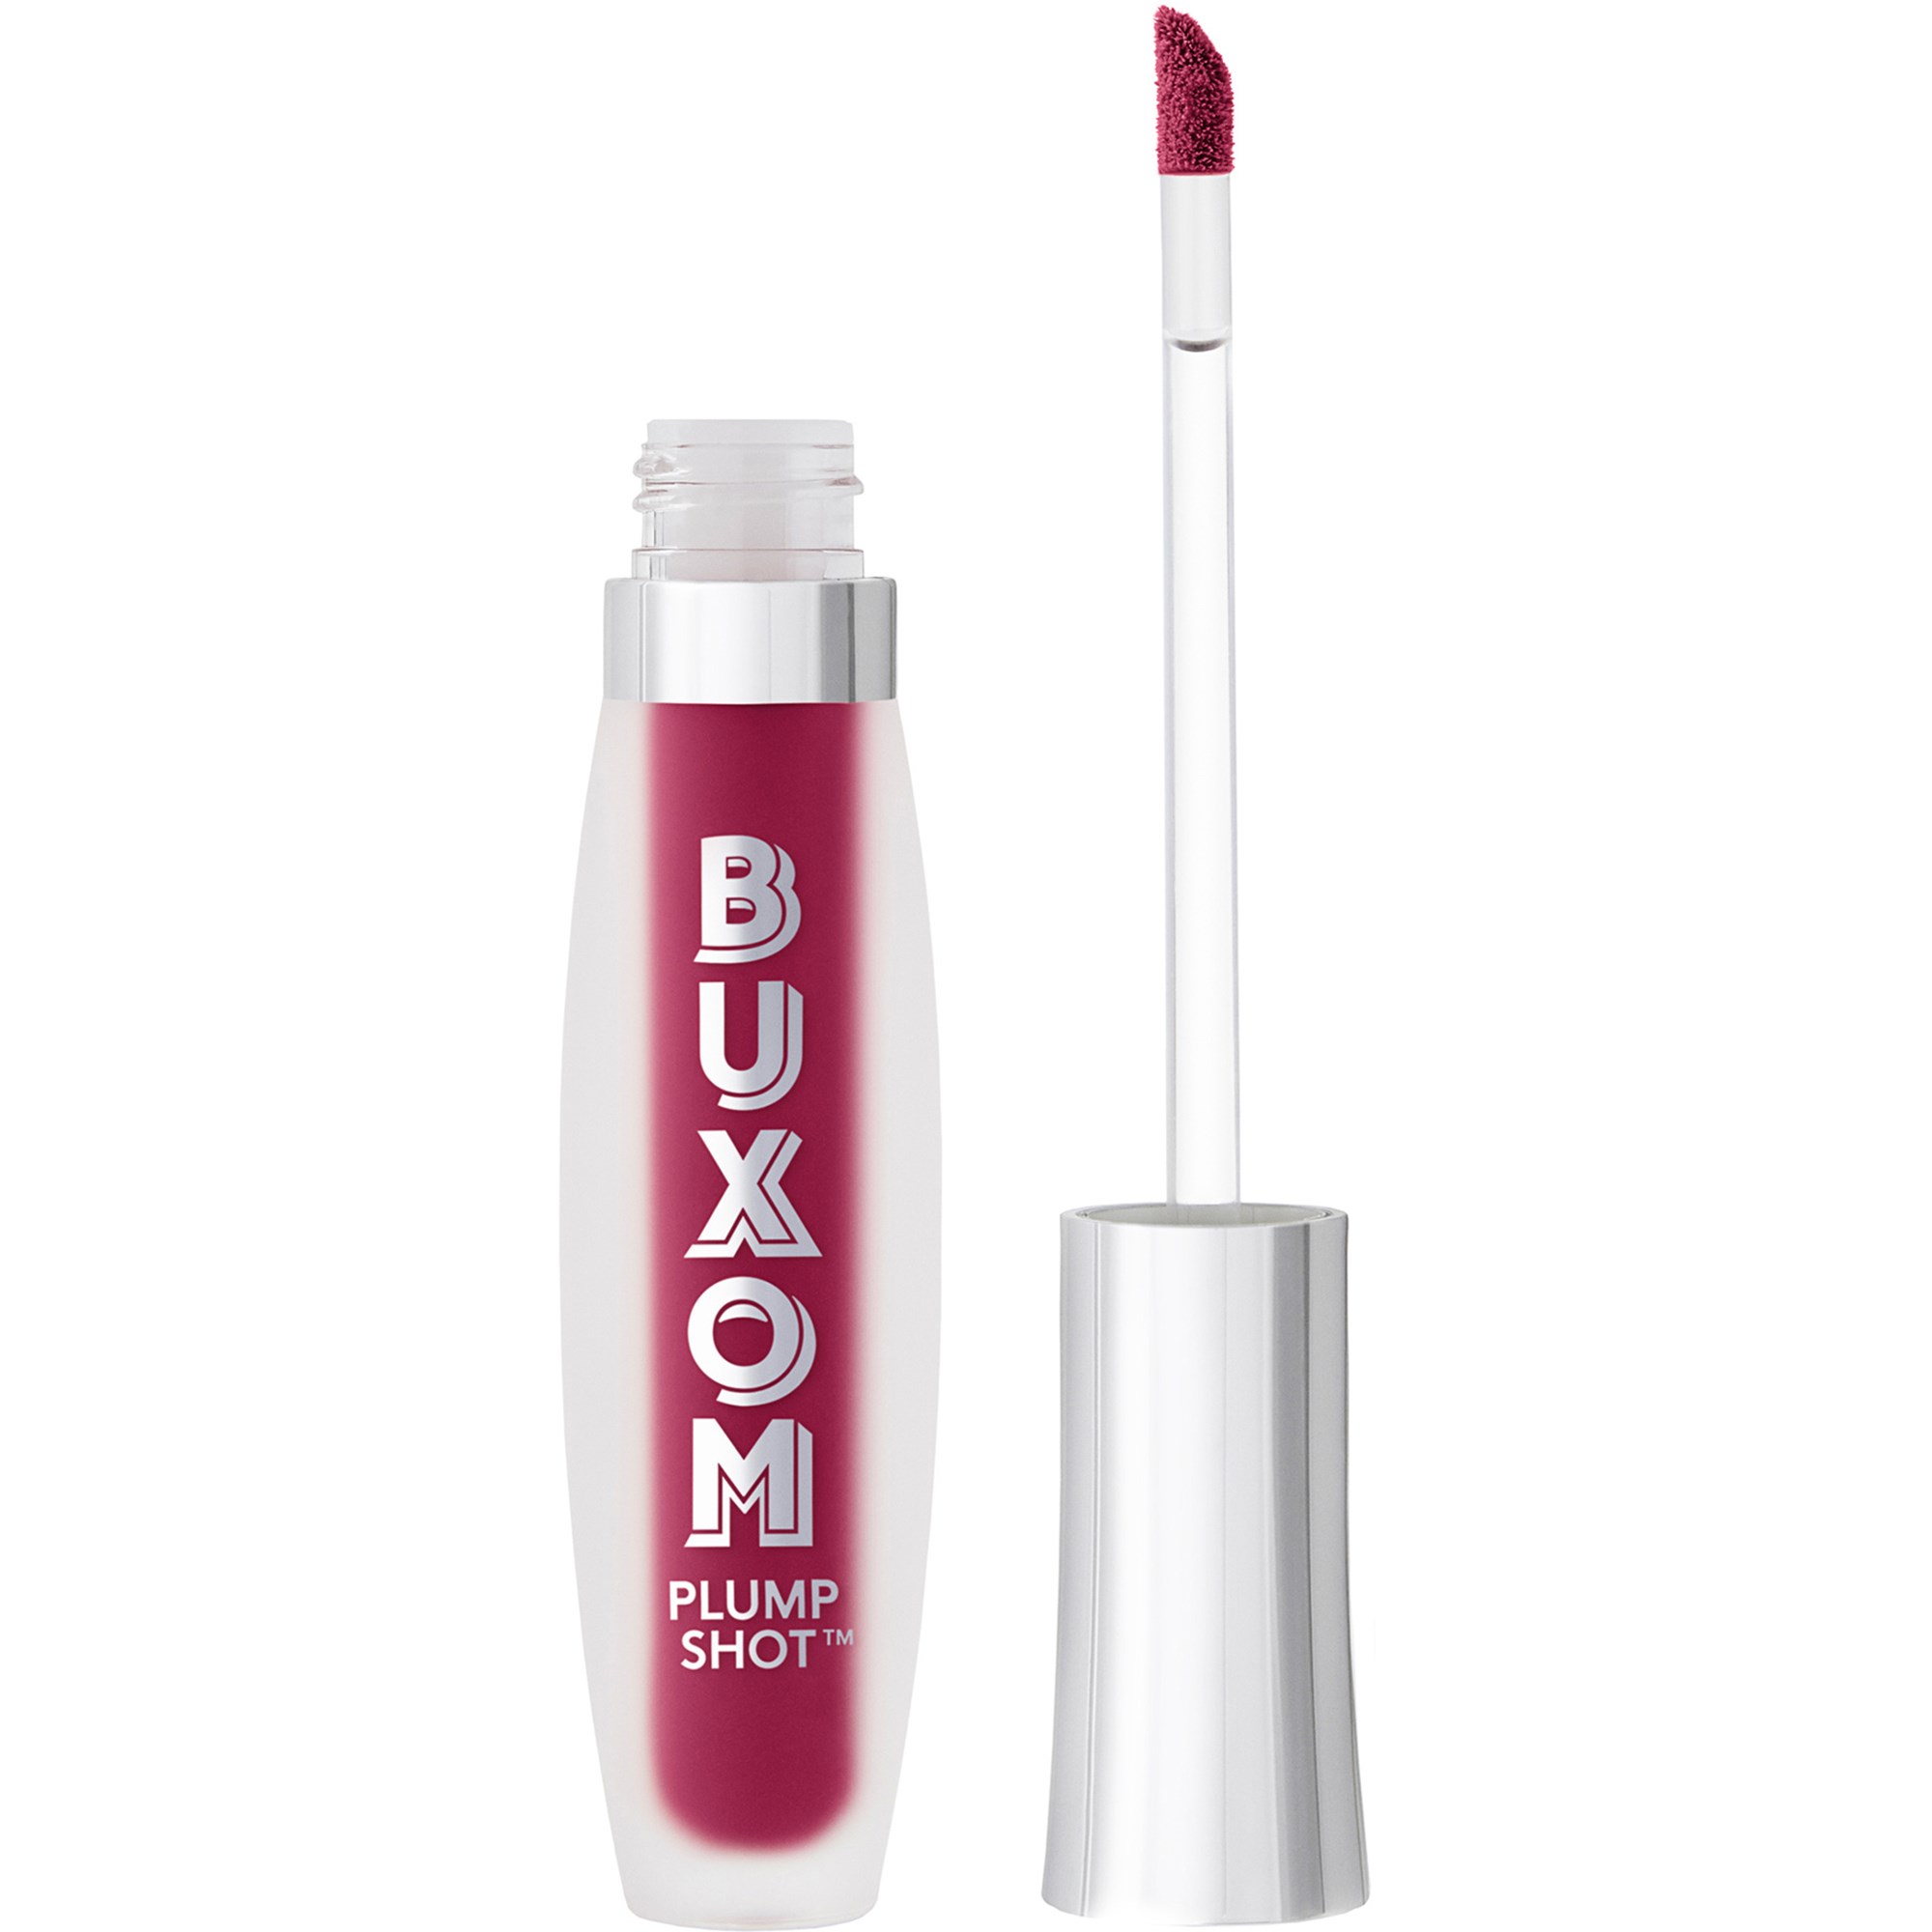 Bilde av Buxom Plump Shot™ Collagen-infused Lip Serum Fuchsia You